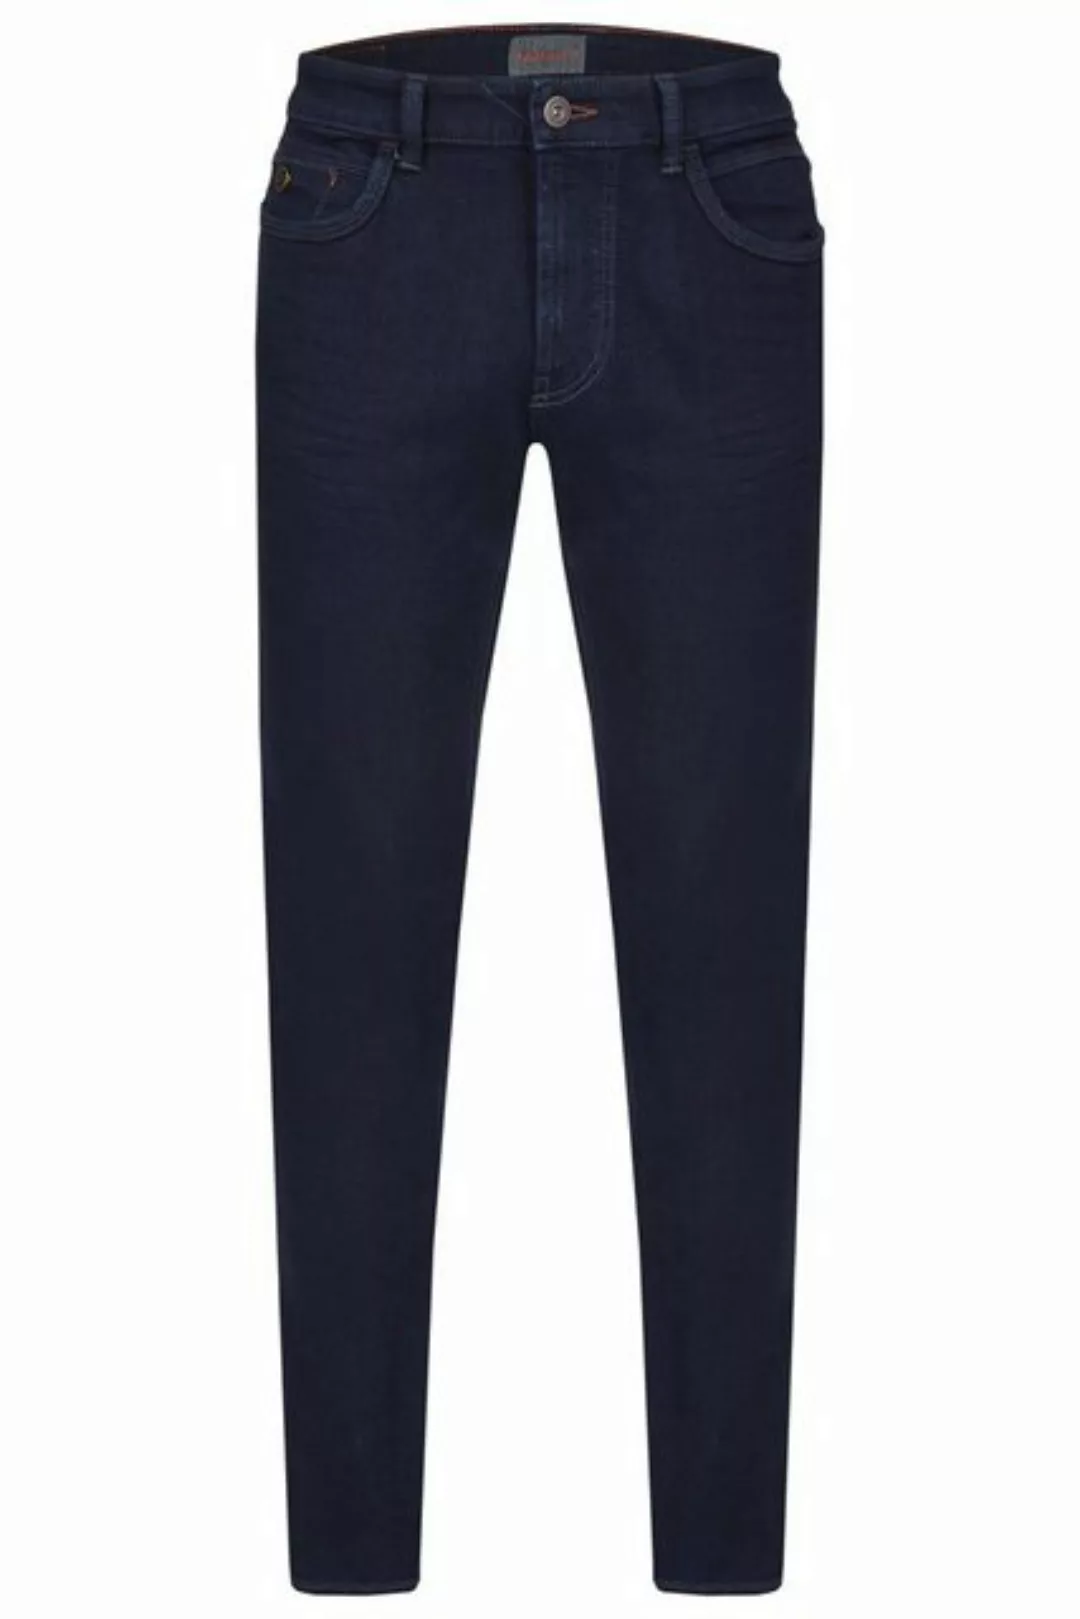 Hattric 5-Pocket-Jeans hattric Herren Jeans Hose 5-Pocket Harris Modern D günstig online kaufen